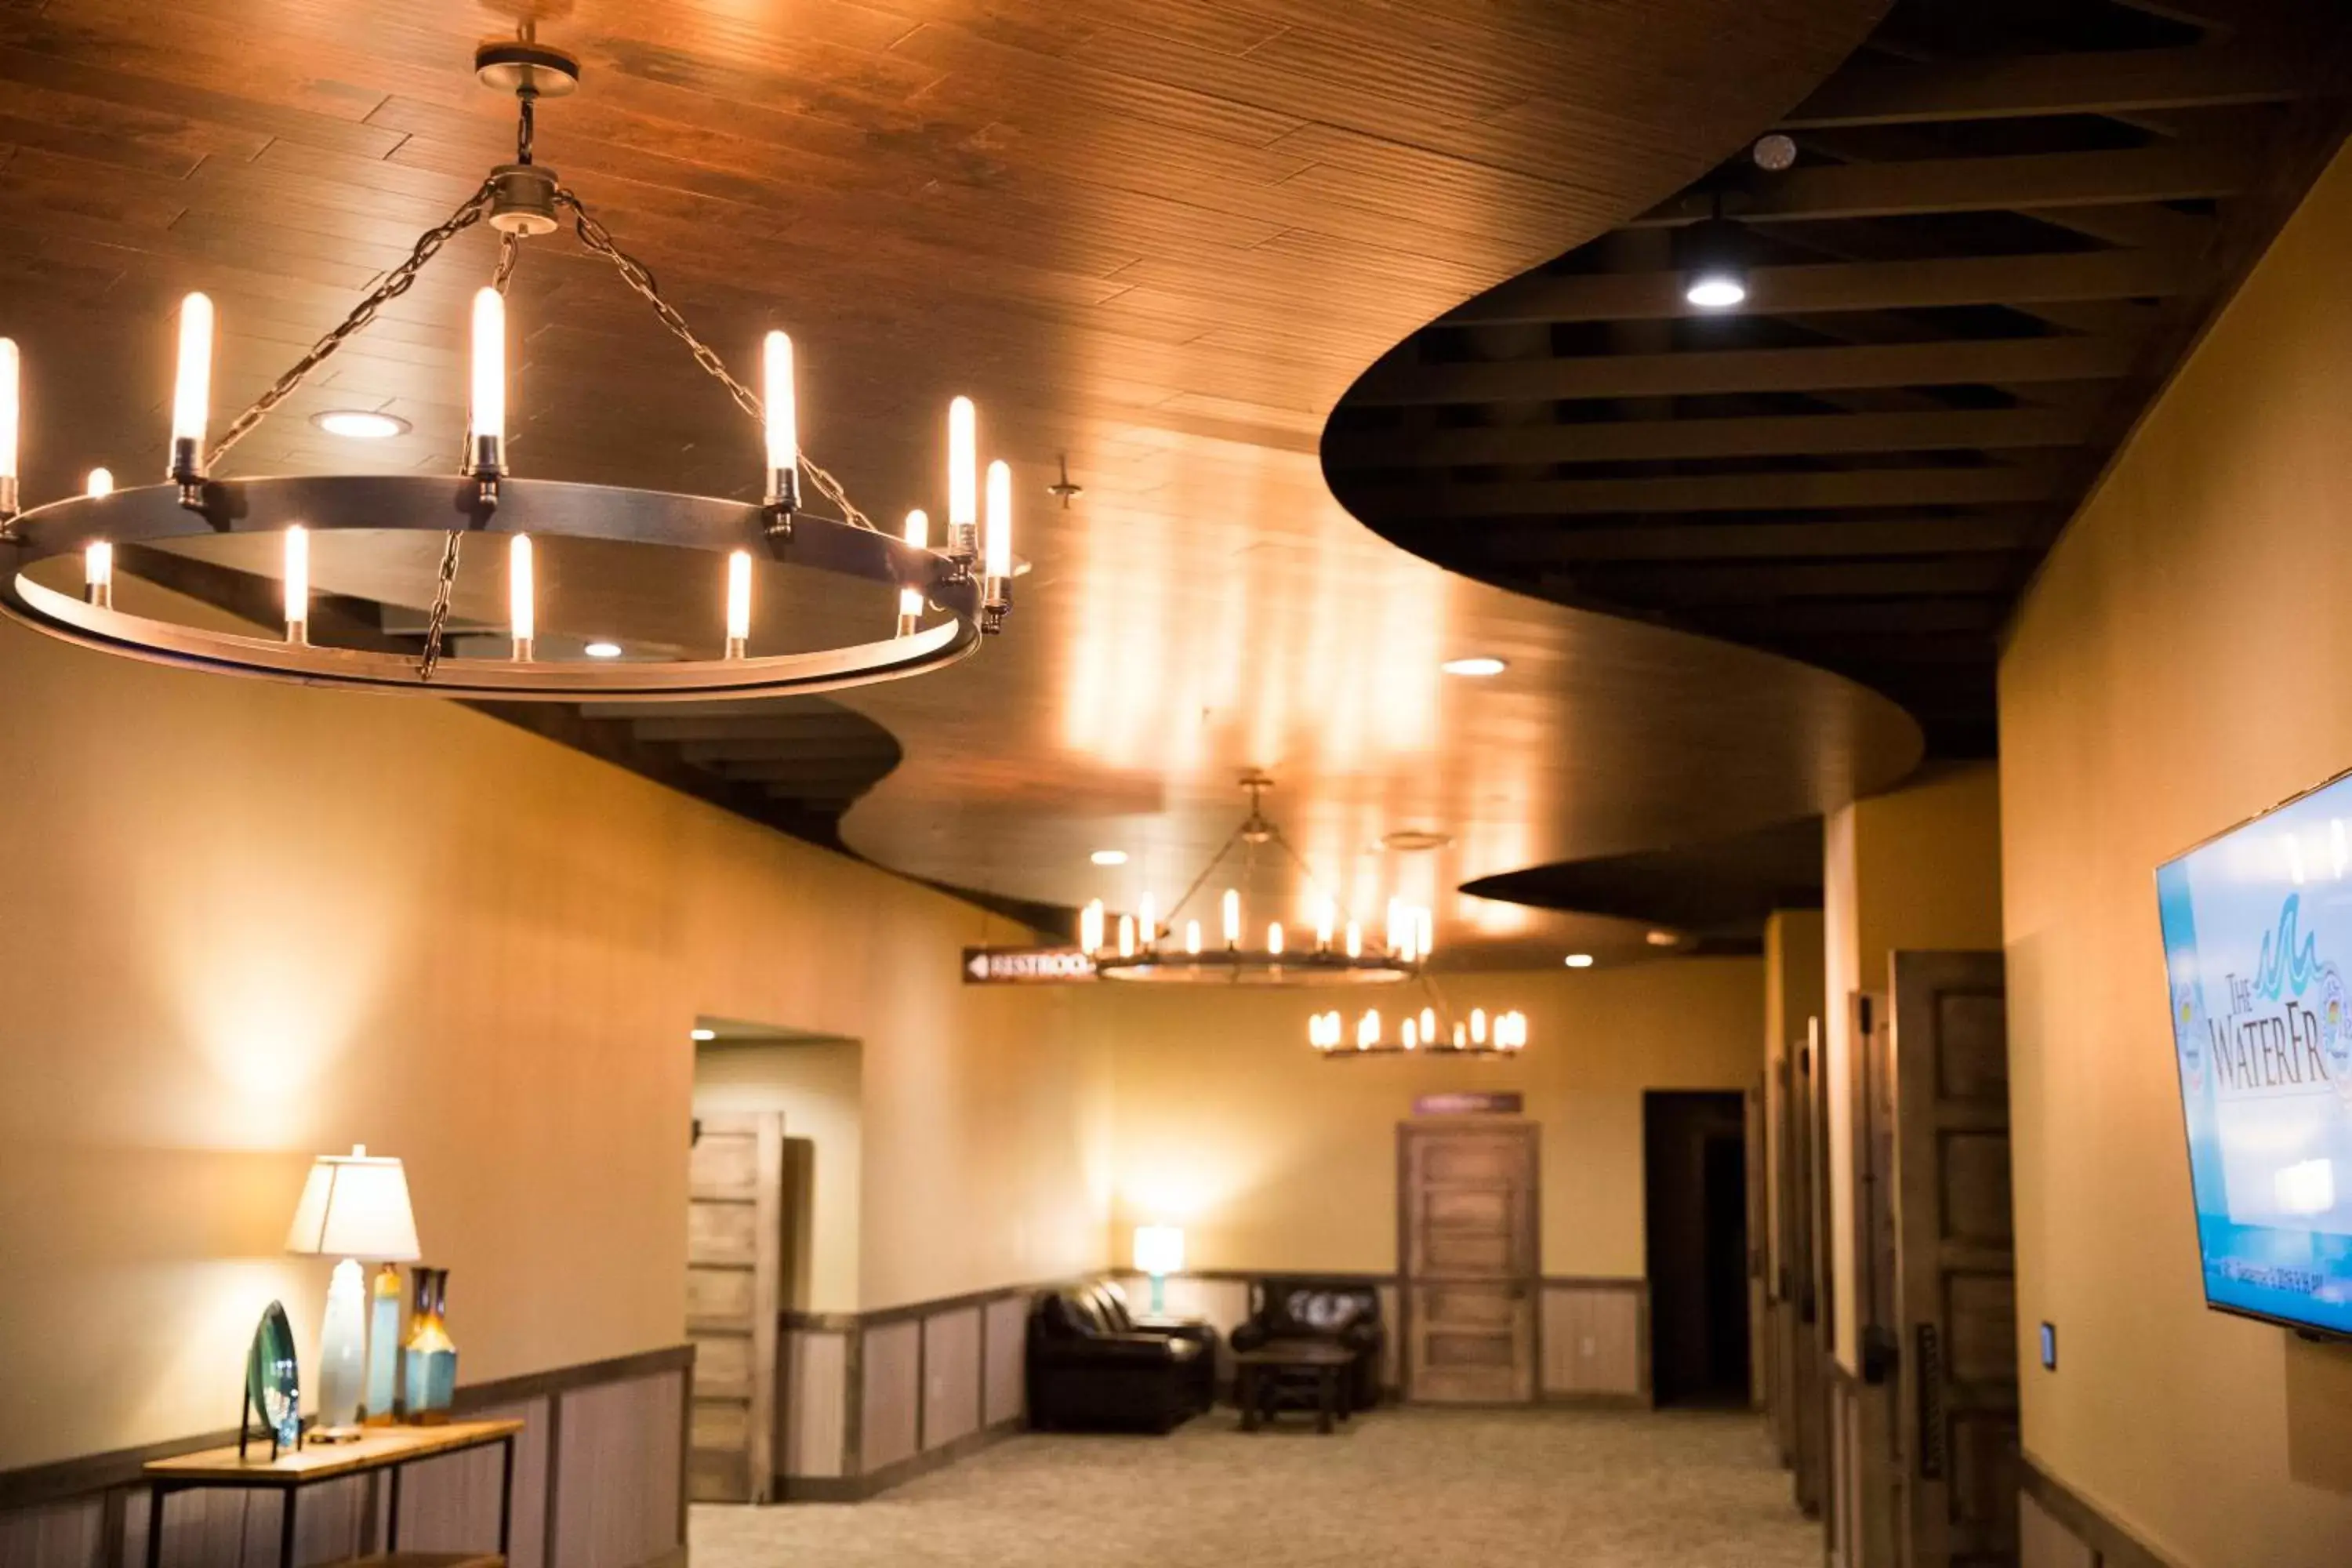 Banquet/Function facilities, Lobby/Reception in Bridges Bay Resort